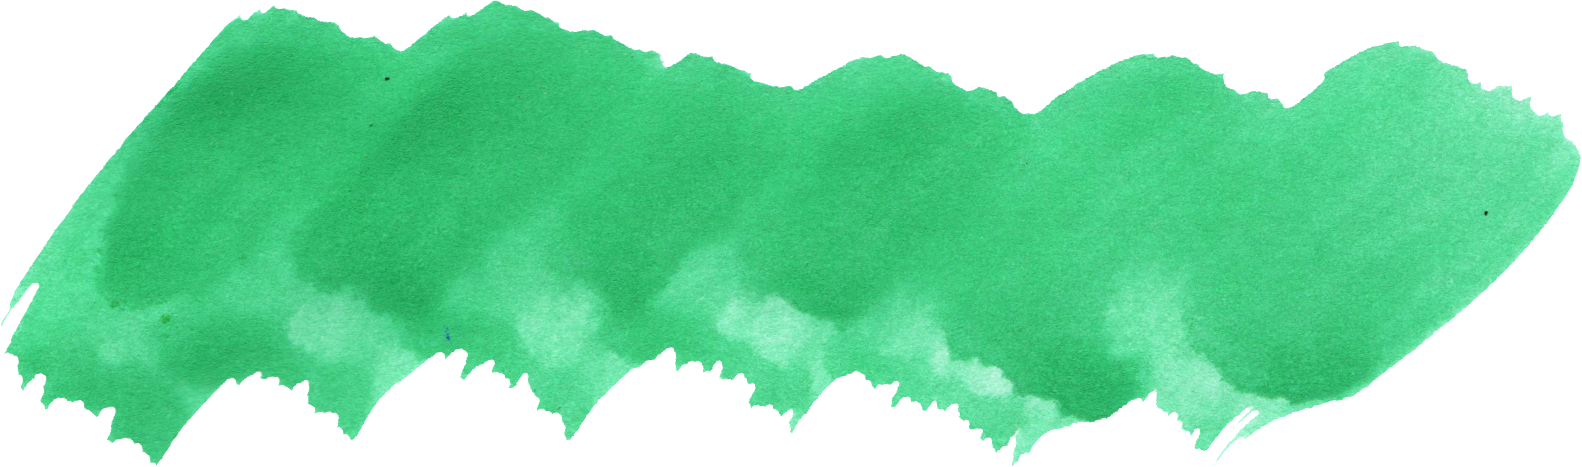 37 Green Watercolor Brush Stroke (PNG Transparent) Vol. 3.